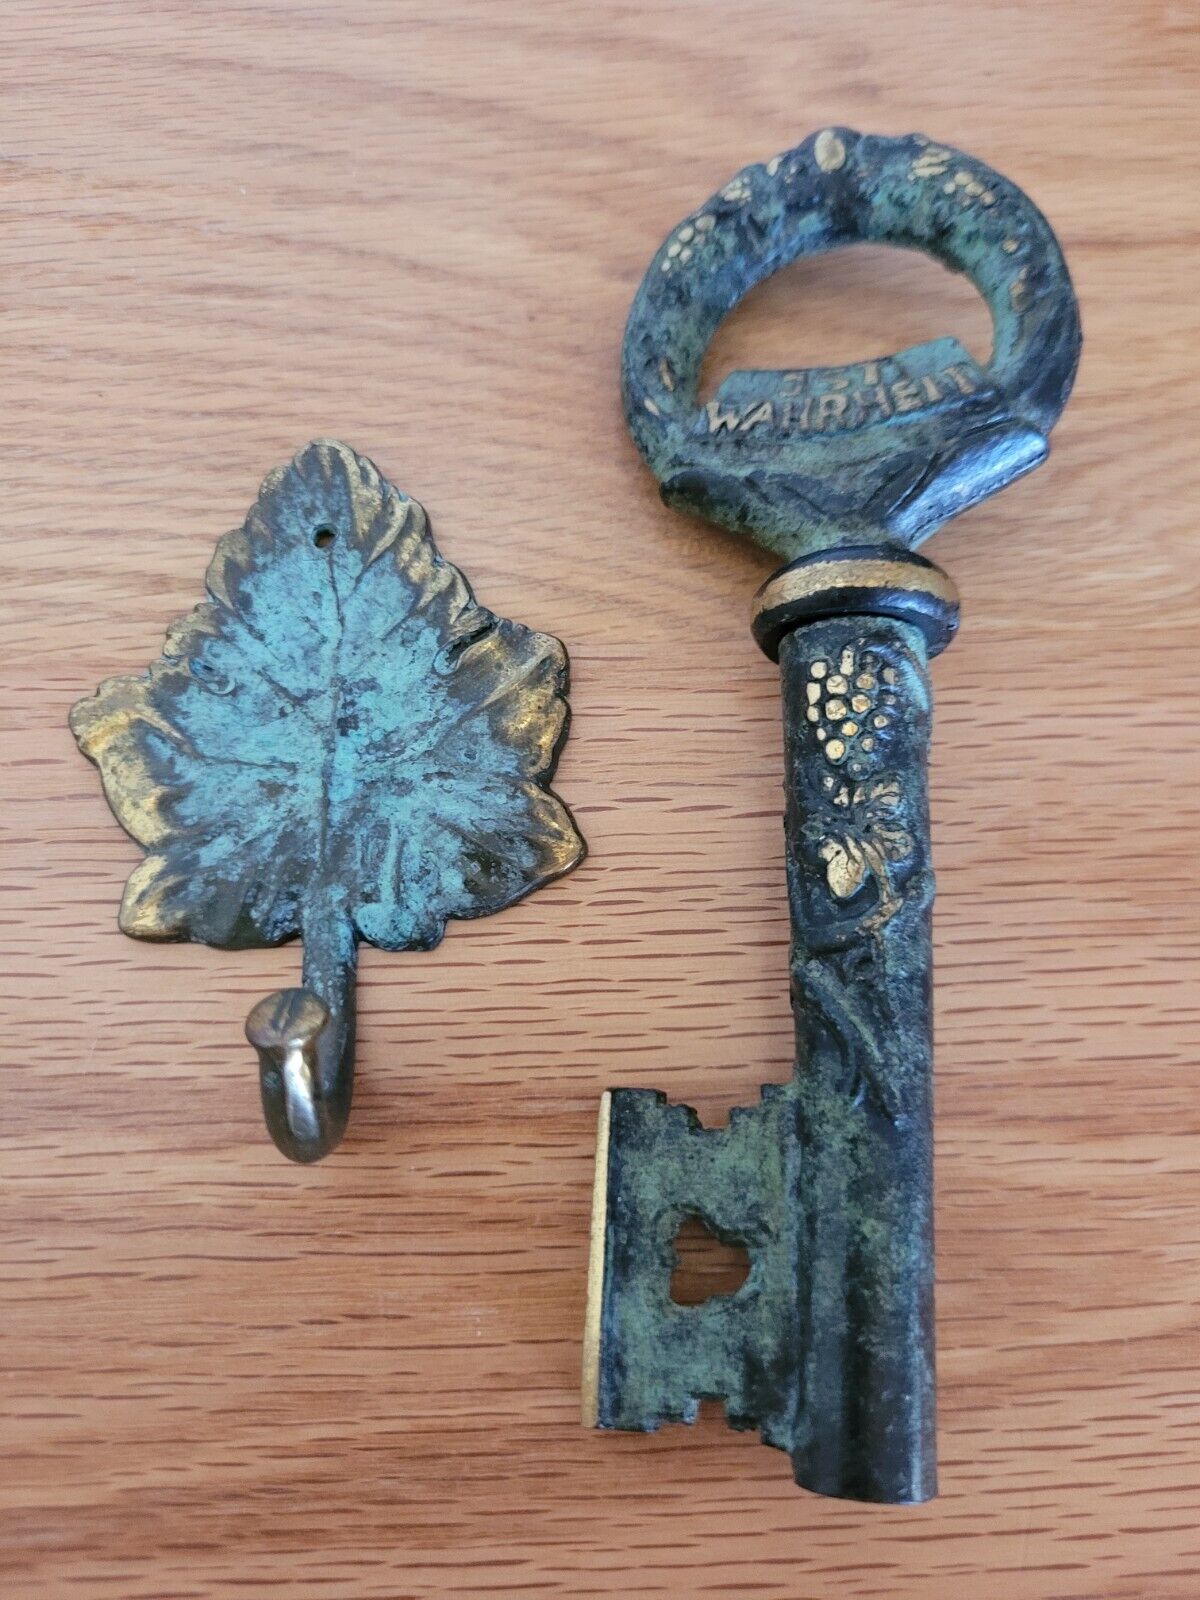 JST Wahrheit JM Wein Corkscrew Key Skeleton Brass Patina with Leaf hanger